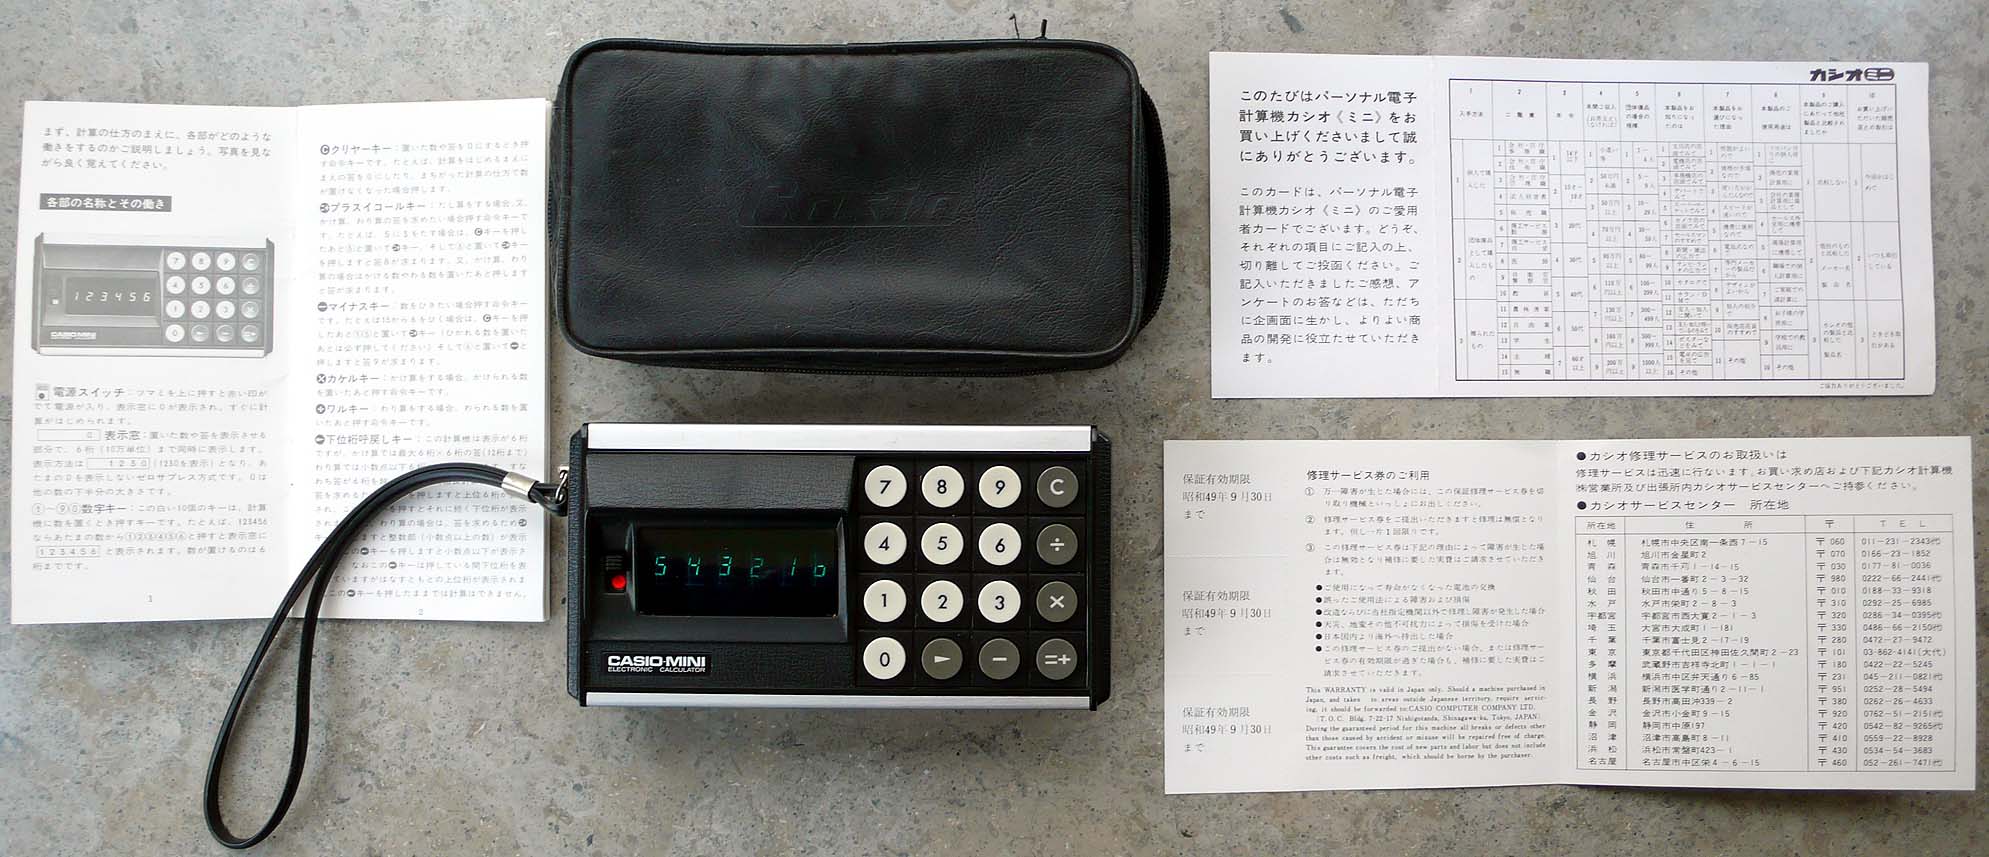 Taschenrechner Casio Mini von 1972